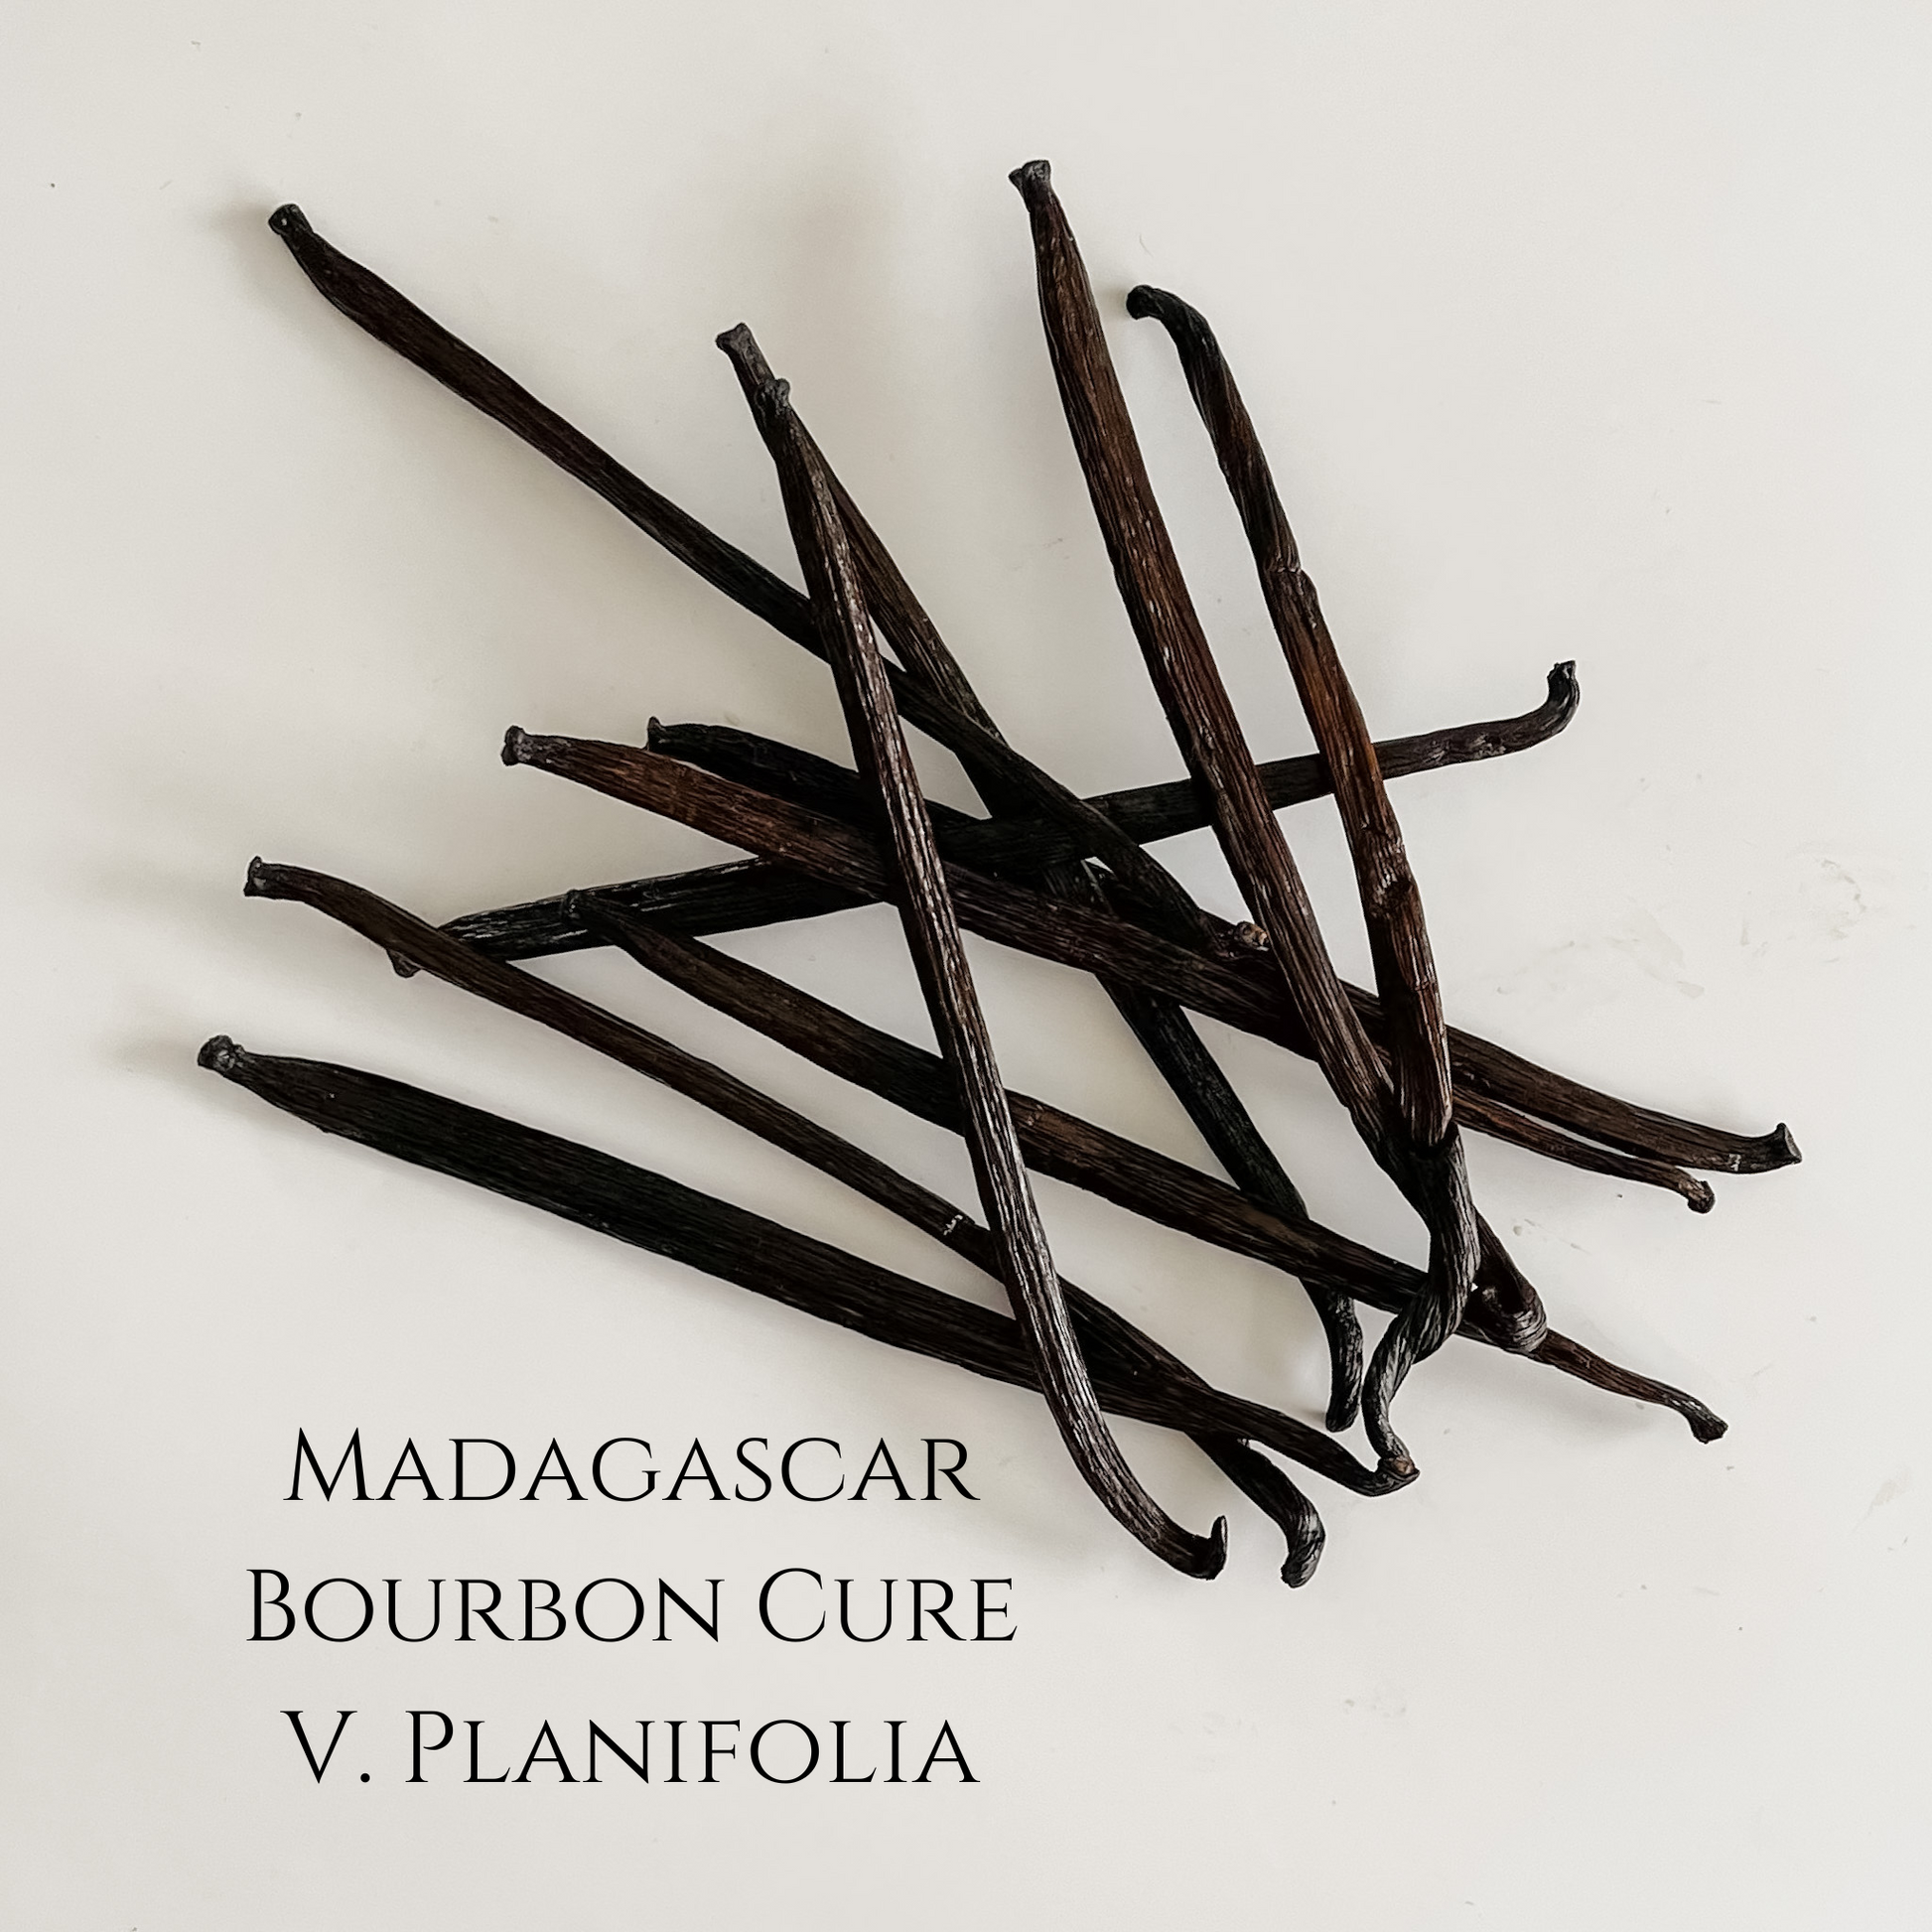 Authentic Products - Vanille en gousses Bourbon Madagascar non